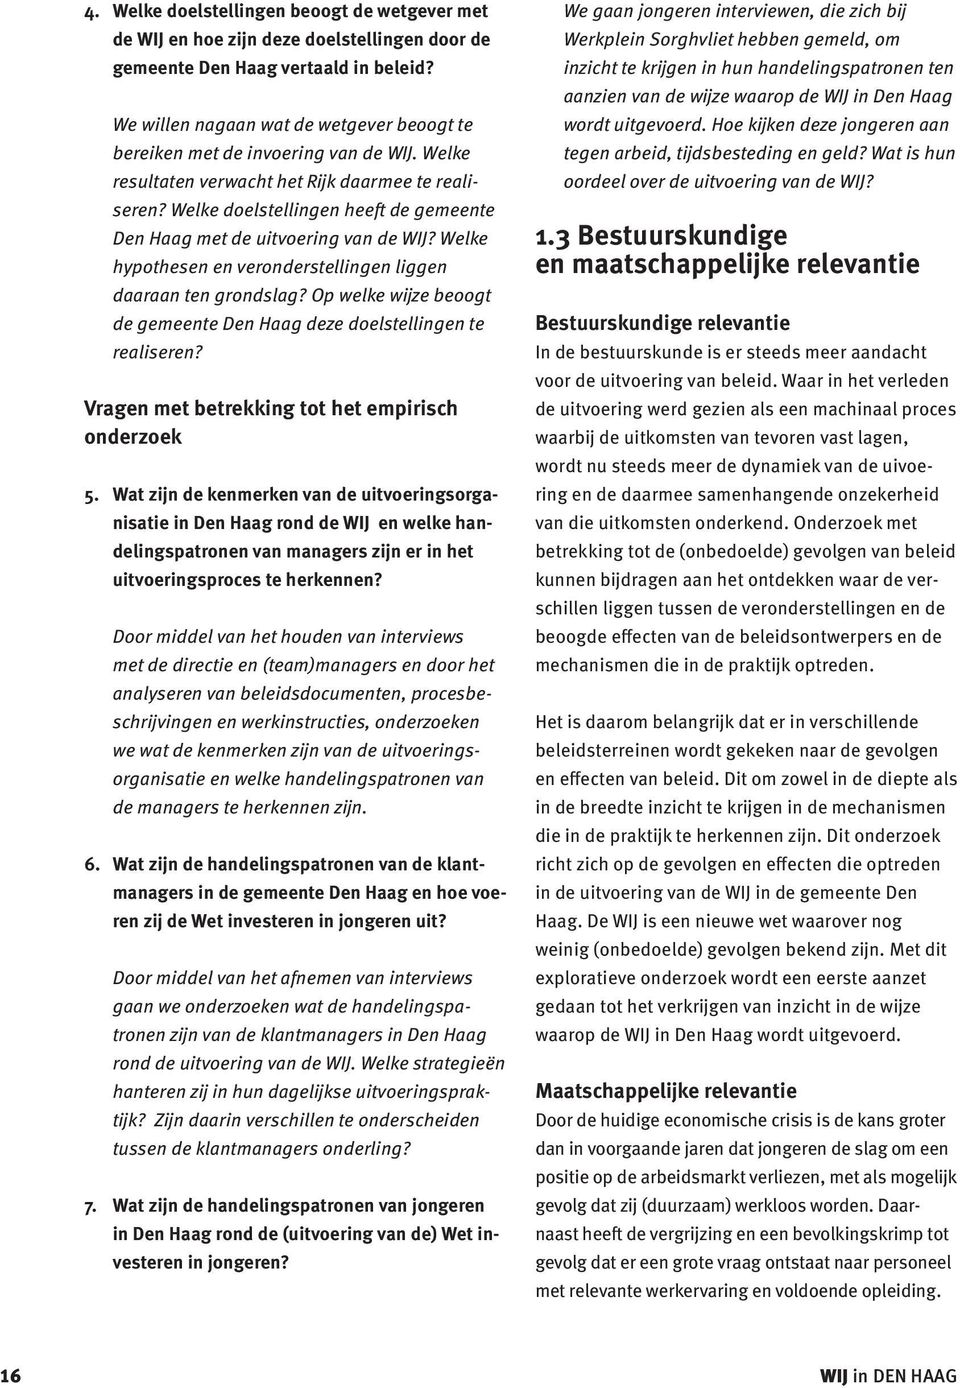 Welke doelstellingen heeft de gemeente Den Haag met de uitvoering van de WĲ? Welke hypothesen en veronderstellingen liggen daaraan ten grondslag?